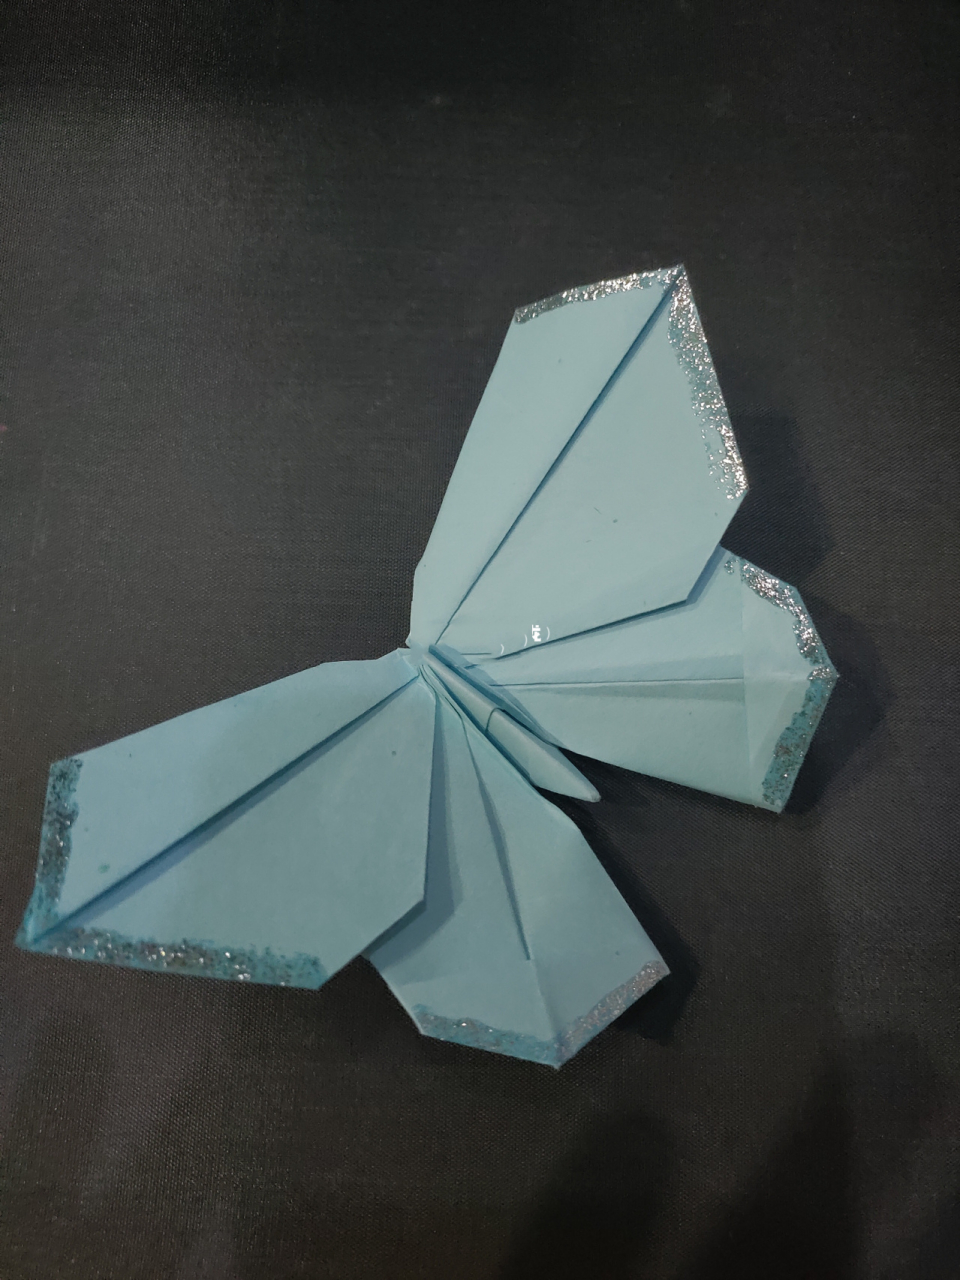 简易蝴蝶折纸图片